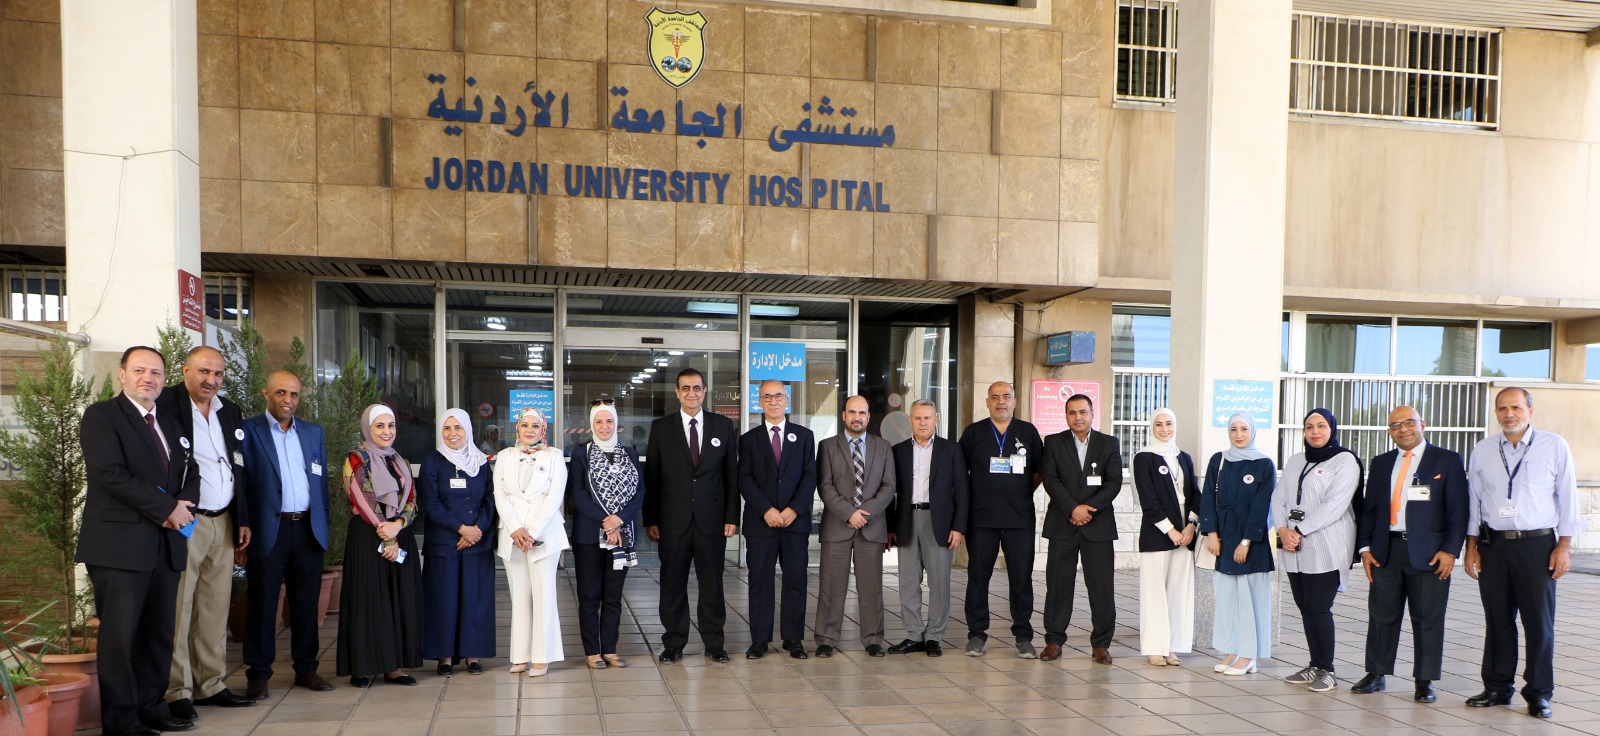 مستشفى الجامعة الأردنيّة يُطلق مبادرات لتحسين الرعاية الصحية في يوم التغيير 